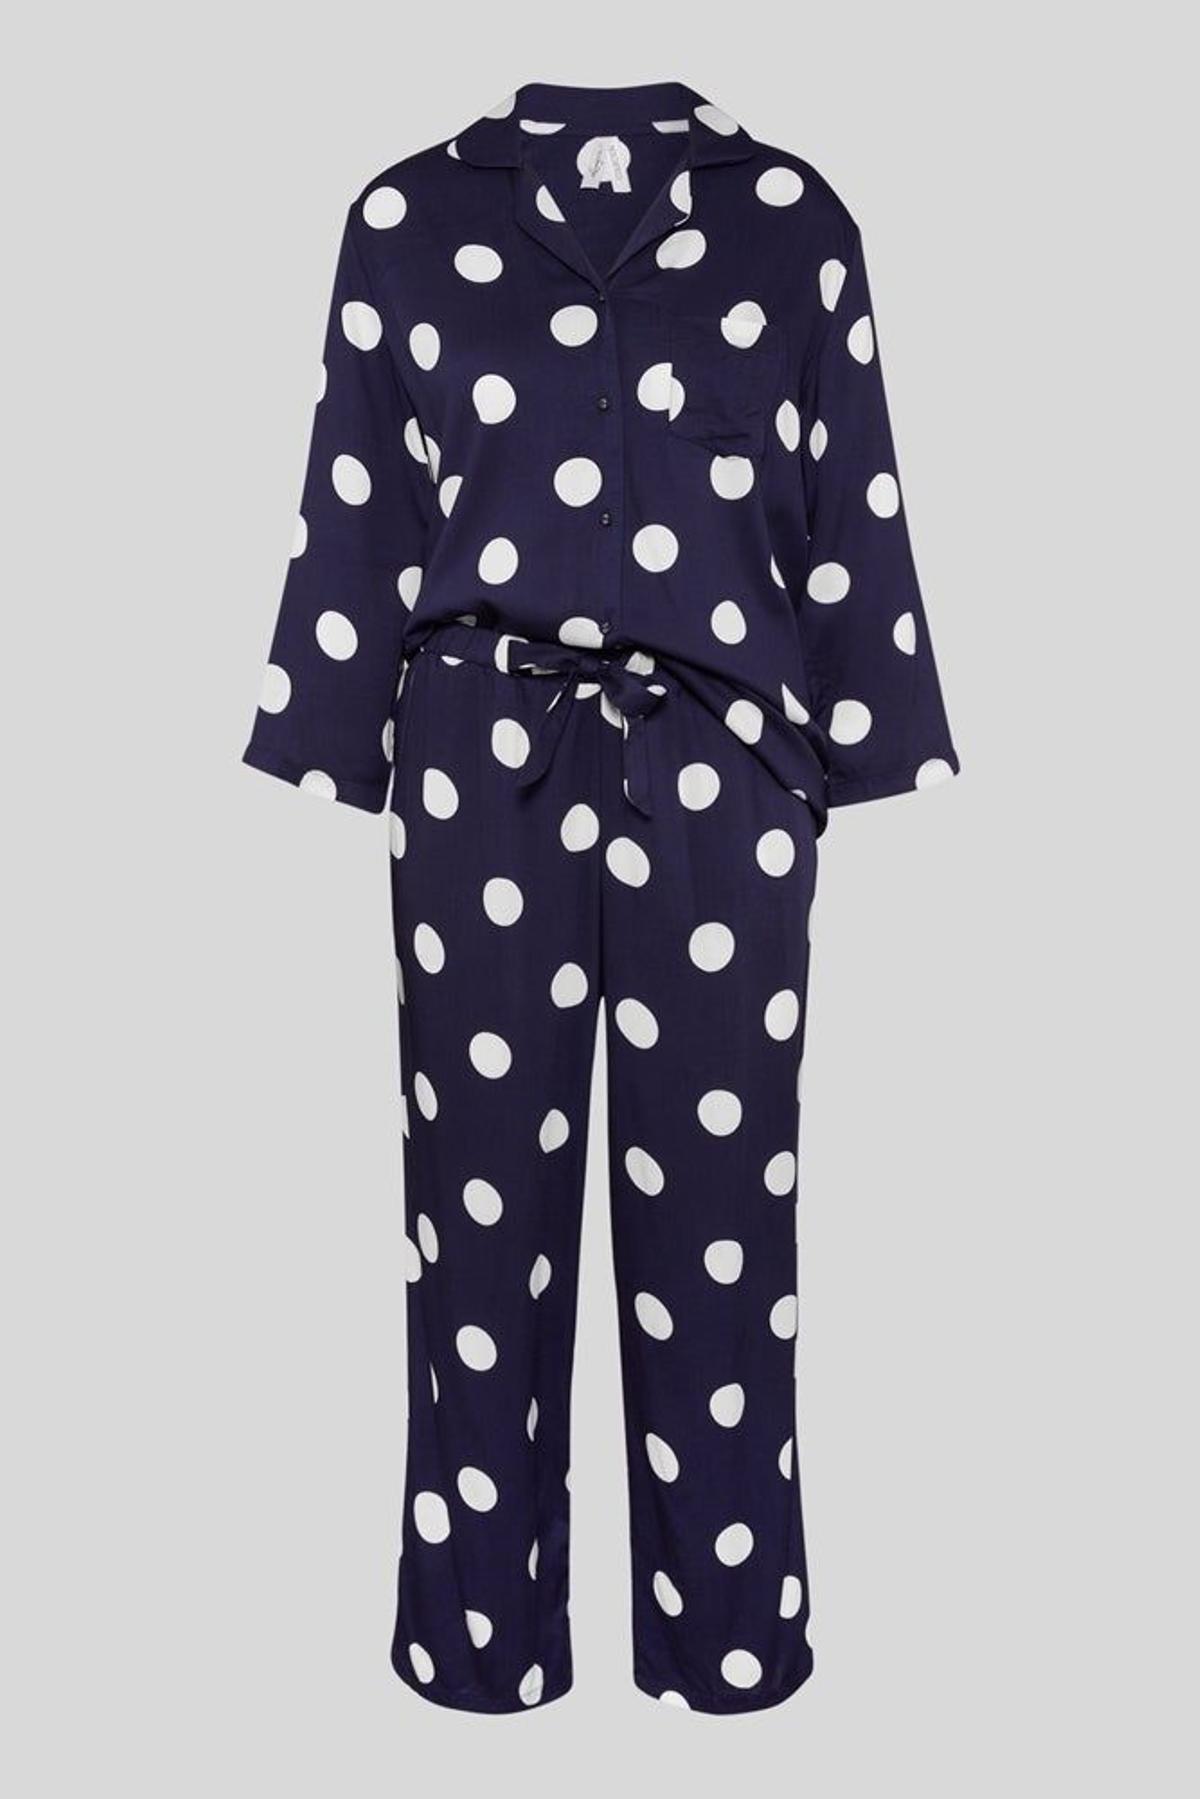 Hábil Disminución Determinar con precisión Ponte flamenca en la cama con este pijama de lunares de C&A - Cuore